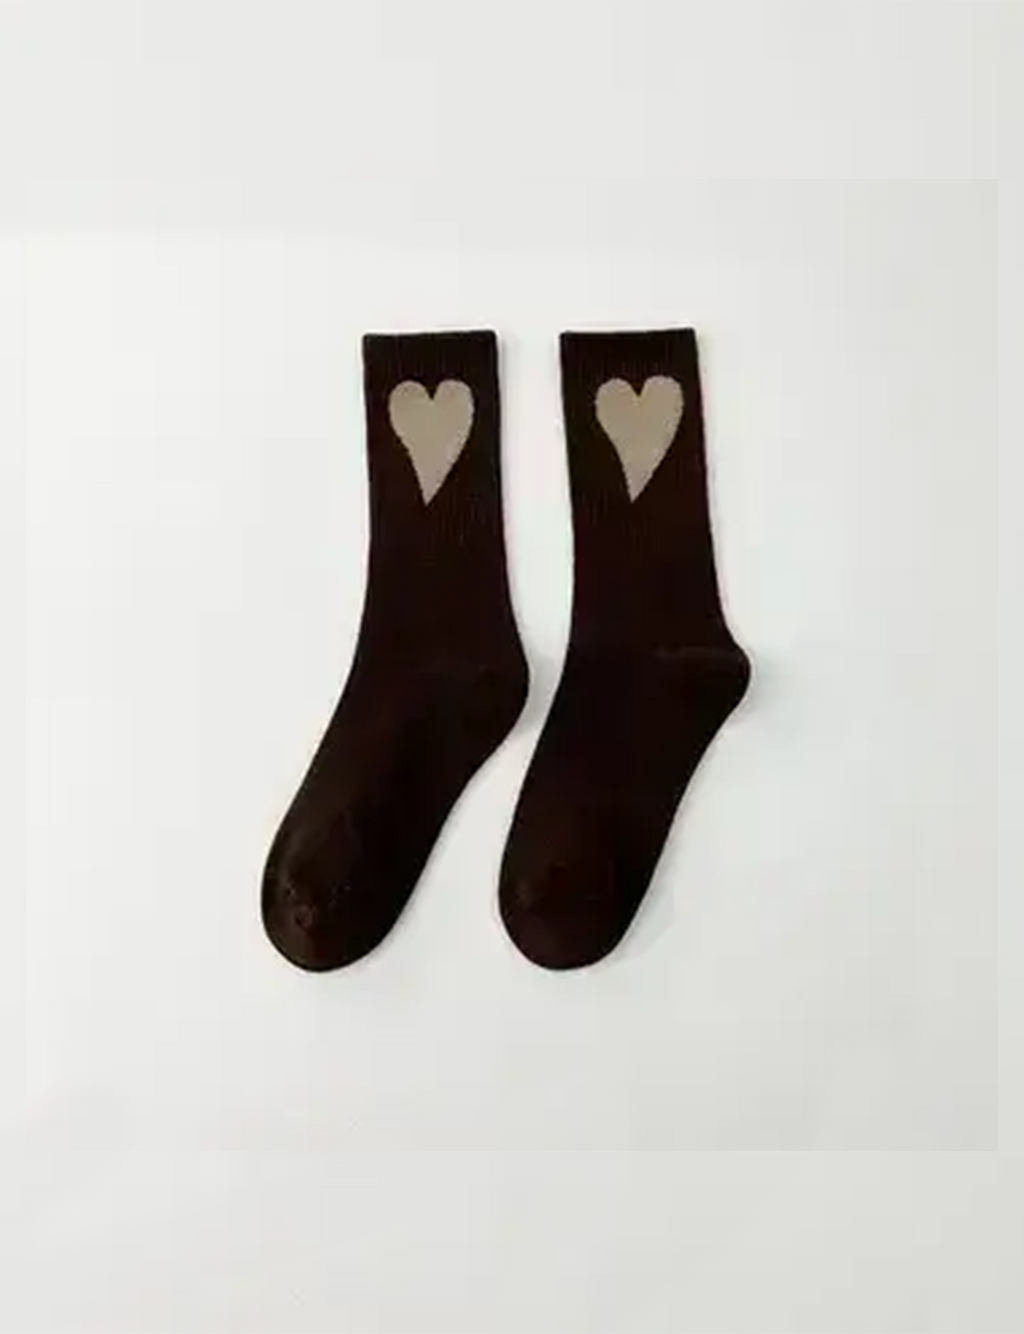 Socks With Hearts, Coffee